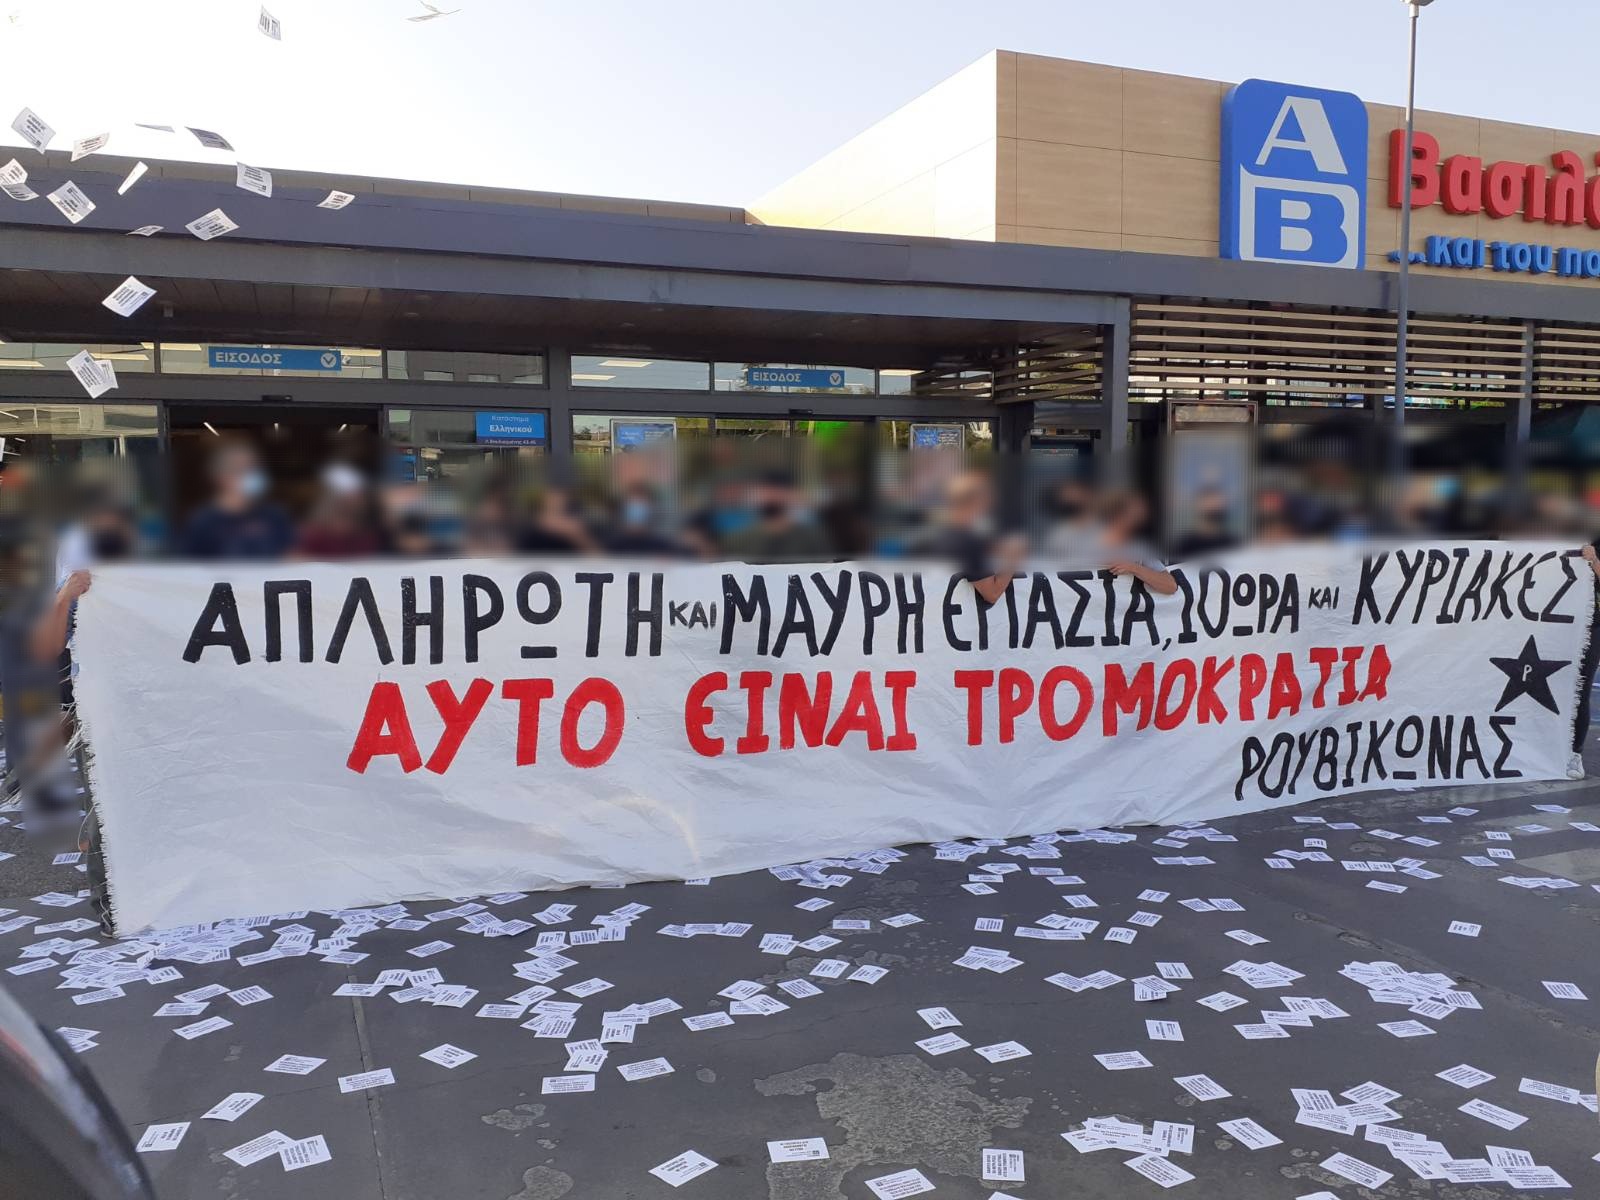 Συγκέντρωση σε κατάστημα ΑΒ Βασιλόπουλος στο Ελληνικό